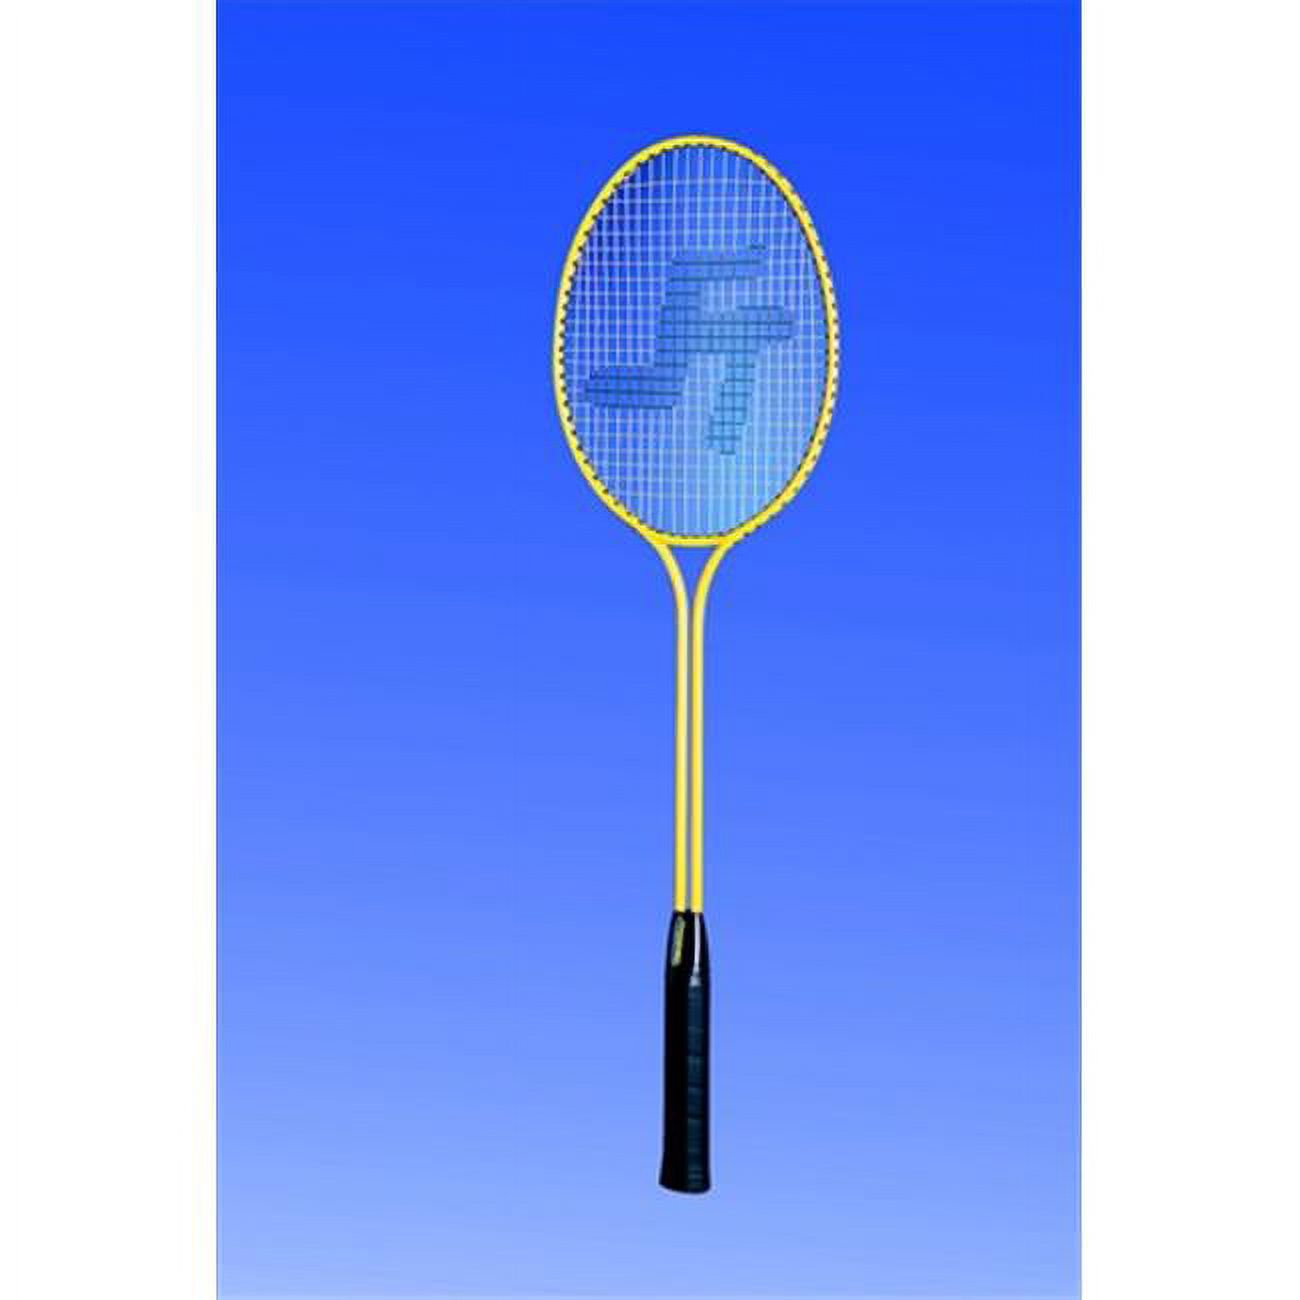 Twin Shaft Steel Badminton Racquet - image 1 of 1